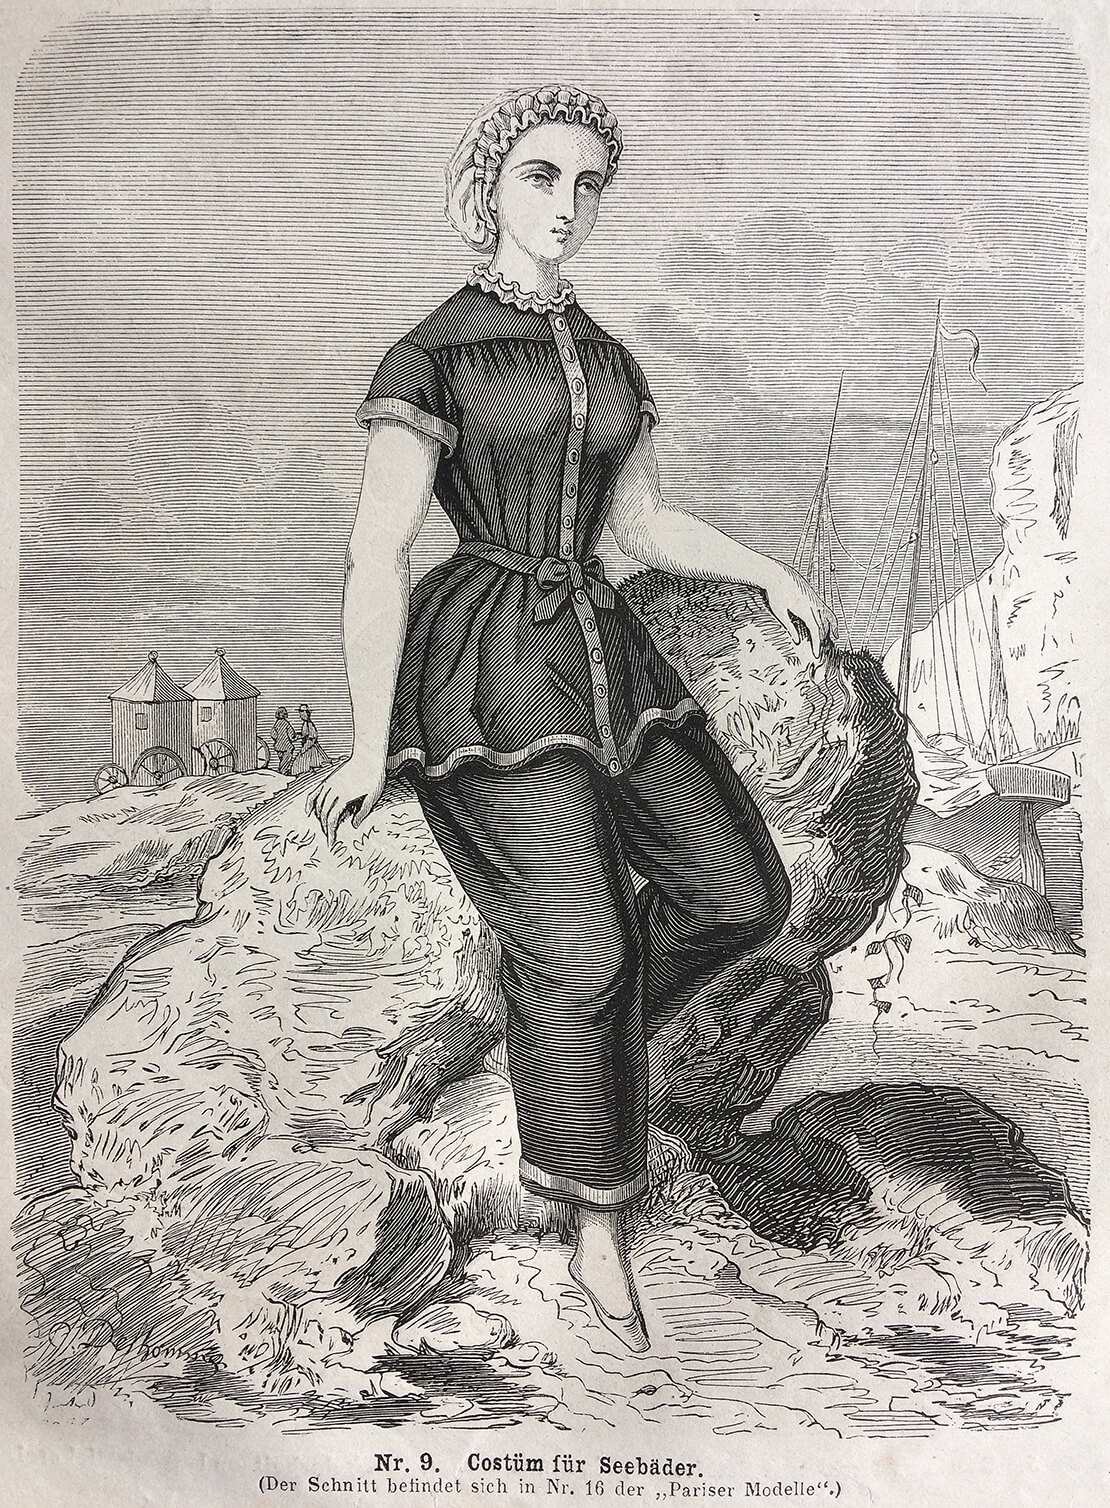 Abbildung aus der Zeitschrift „Der Bazar“, 1. Juli 1863, Wien Museum 